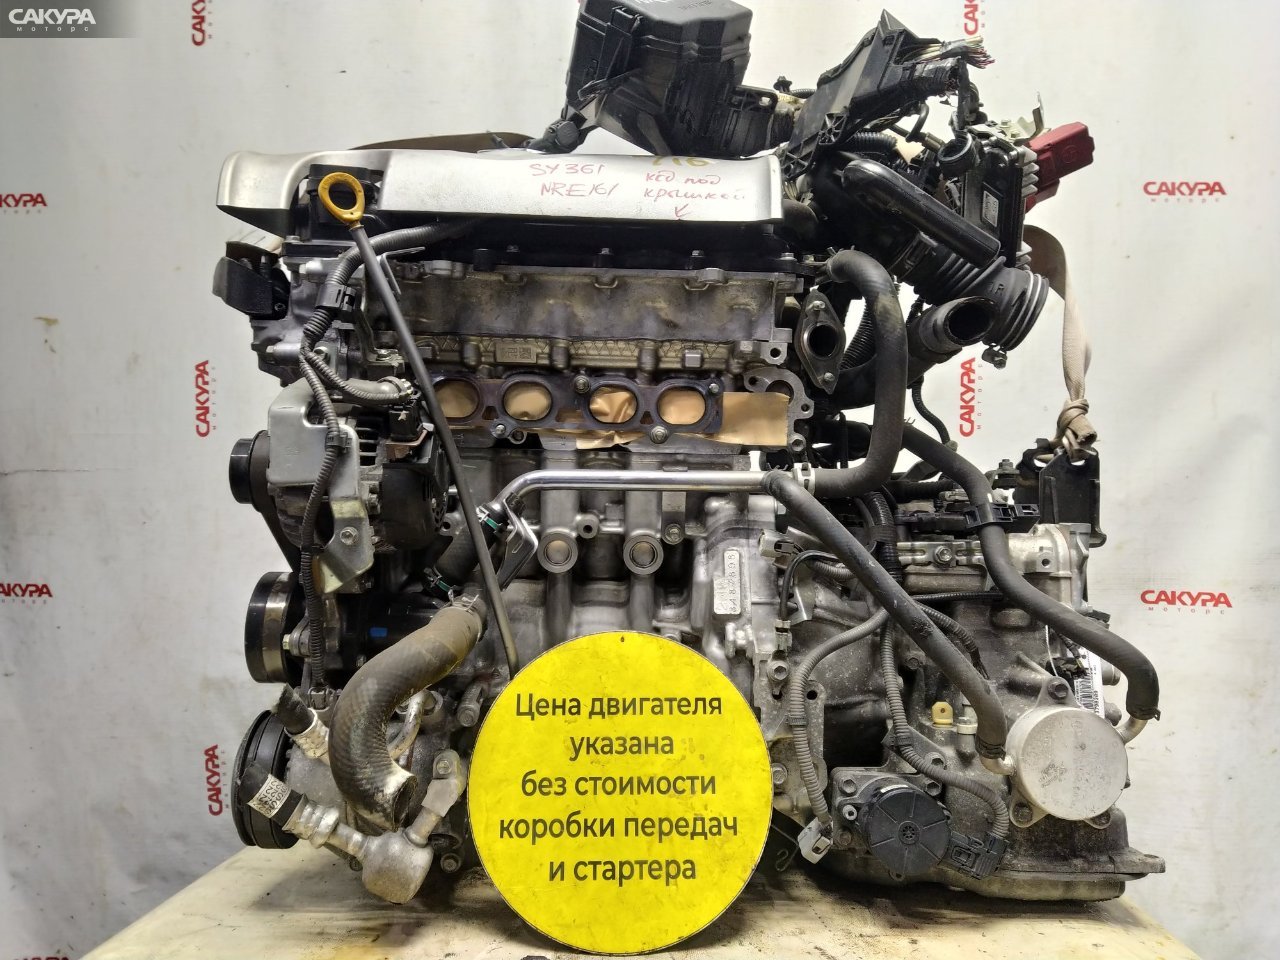 Двигатель Toyota Corolla Fielder NRE161G 2NR-FKE: купить в Сакура Красноярск.